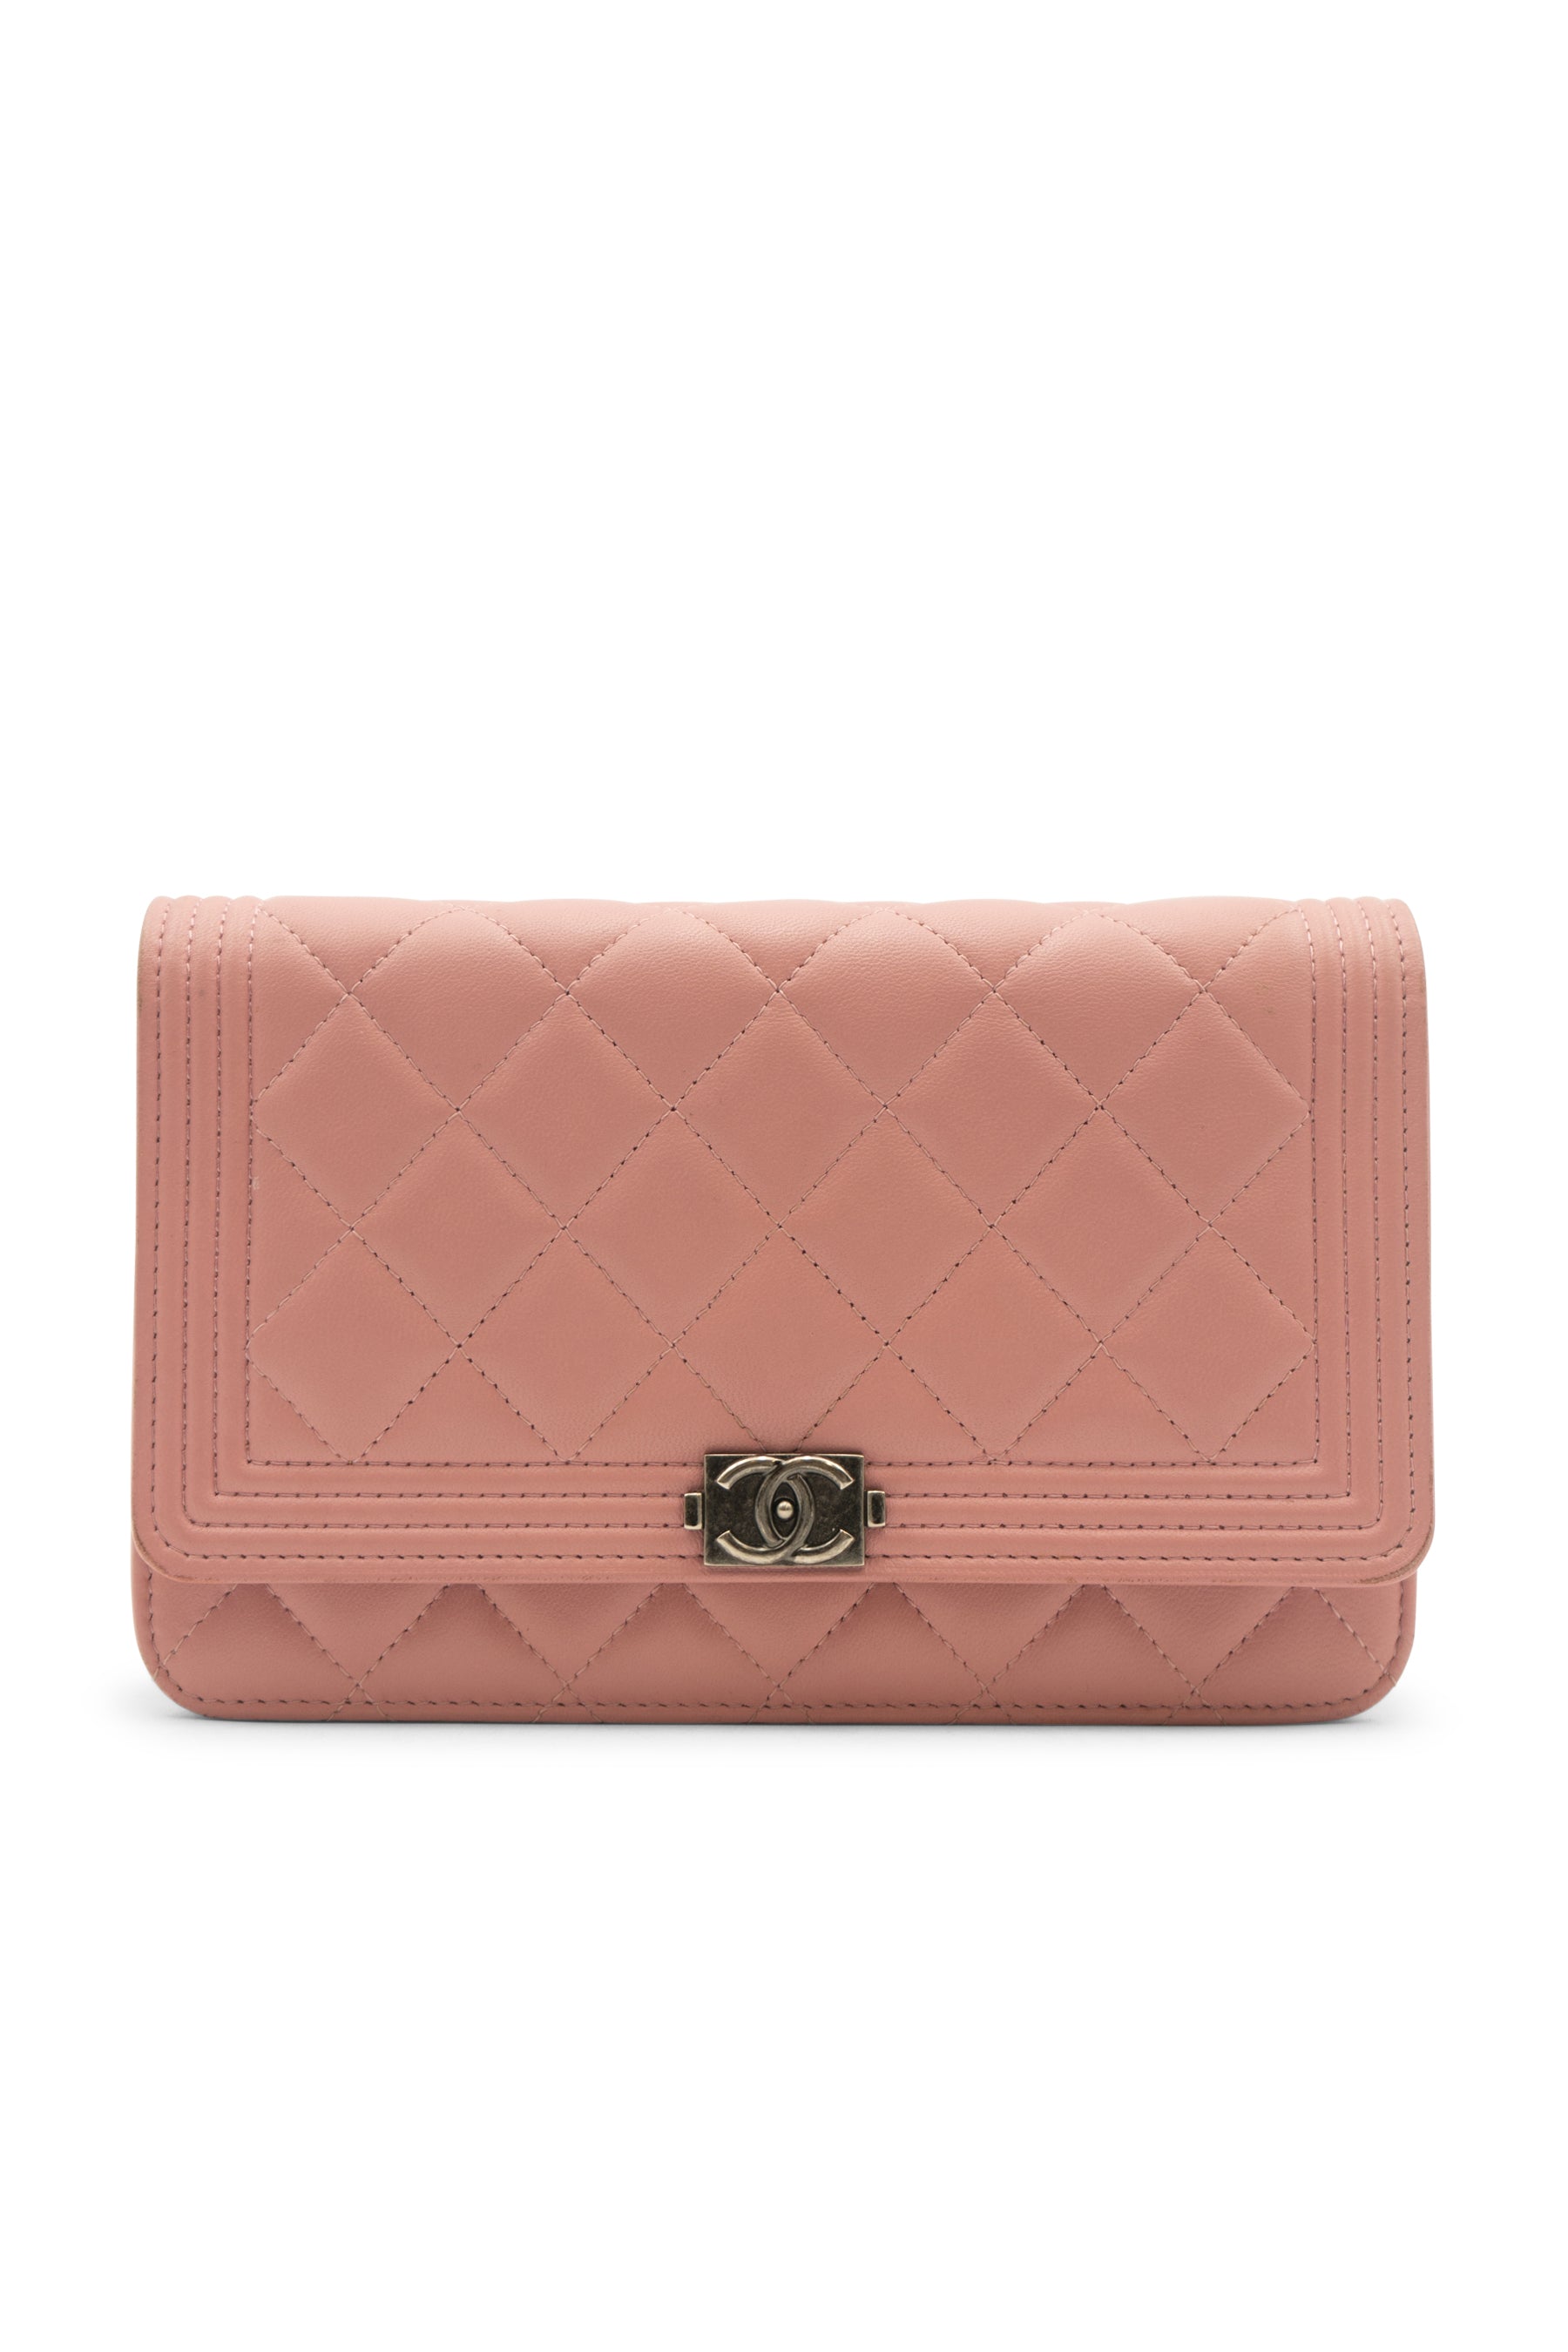 Chanel Pink Boy Yen Wallet Bag w/ Chain